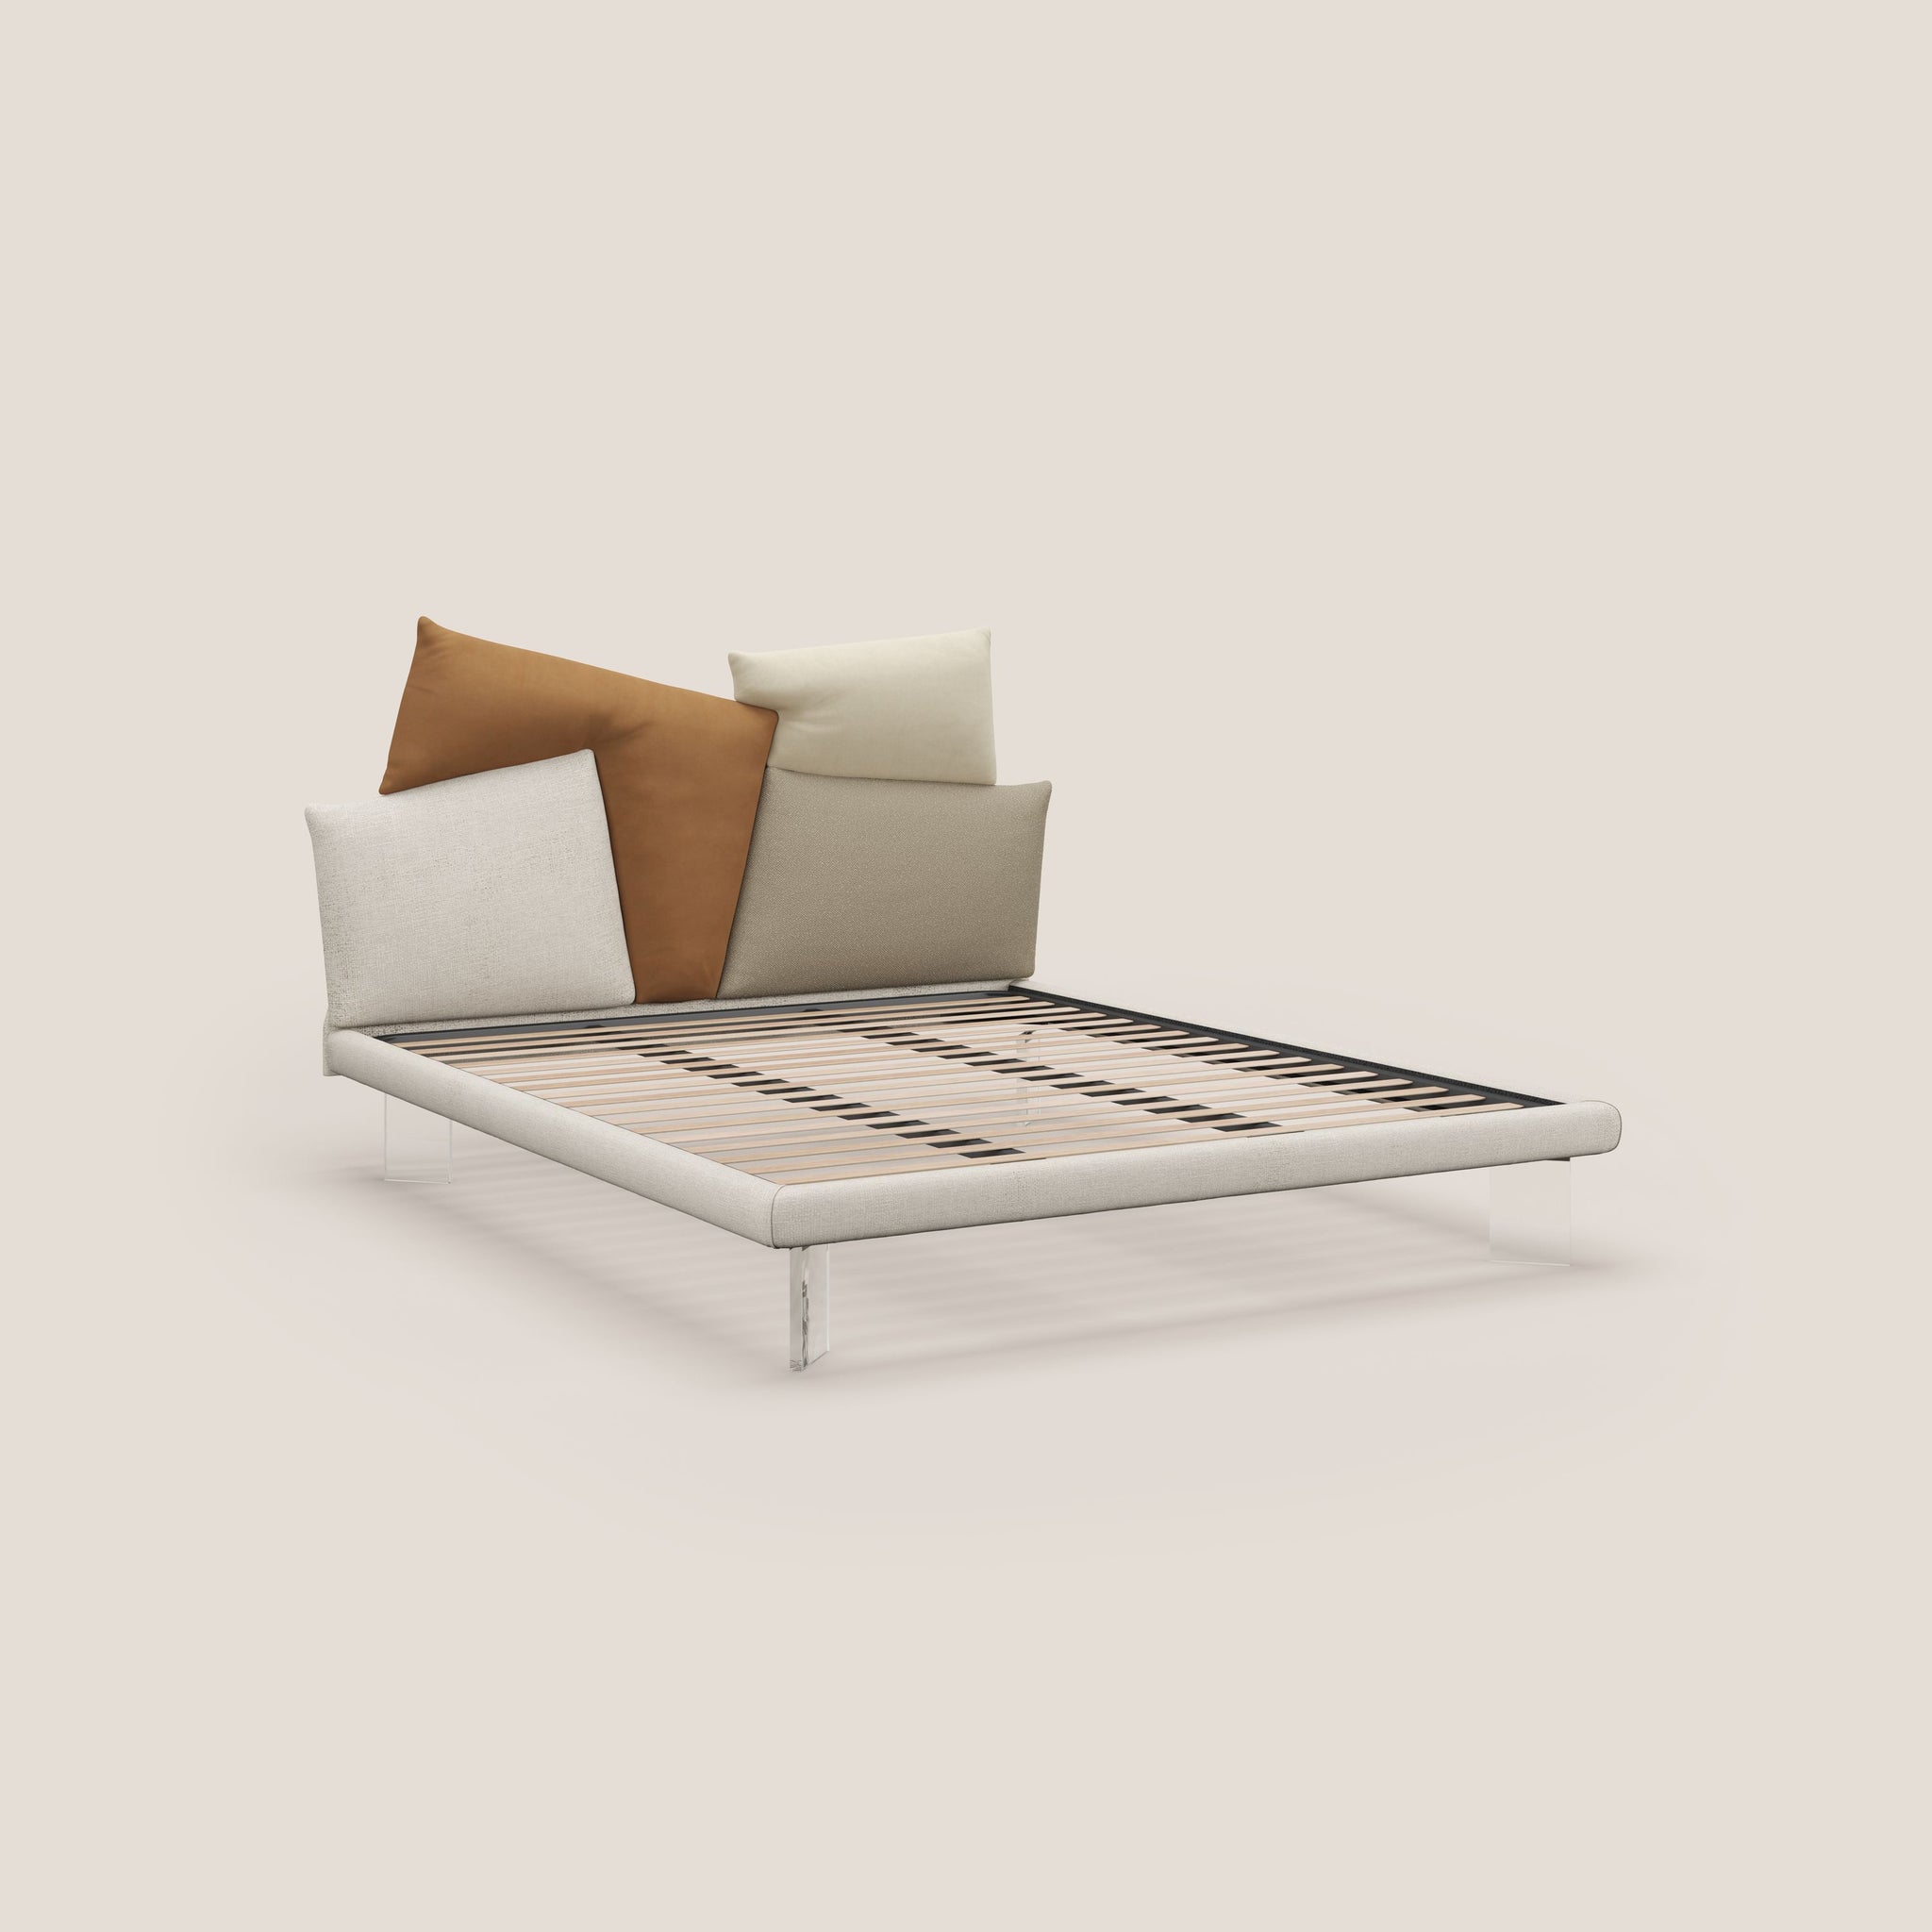 Rebus letto imbottito dal design moderno con piedi trasparenti in plexiglass